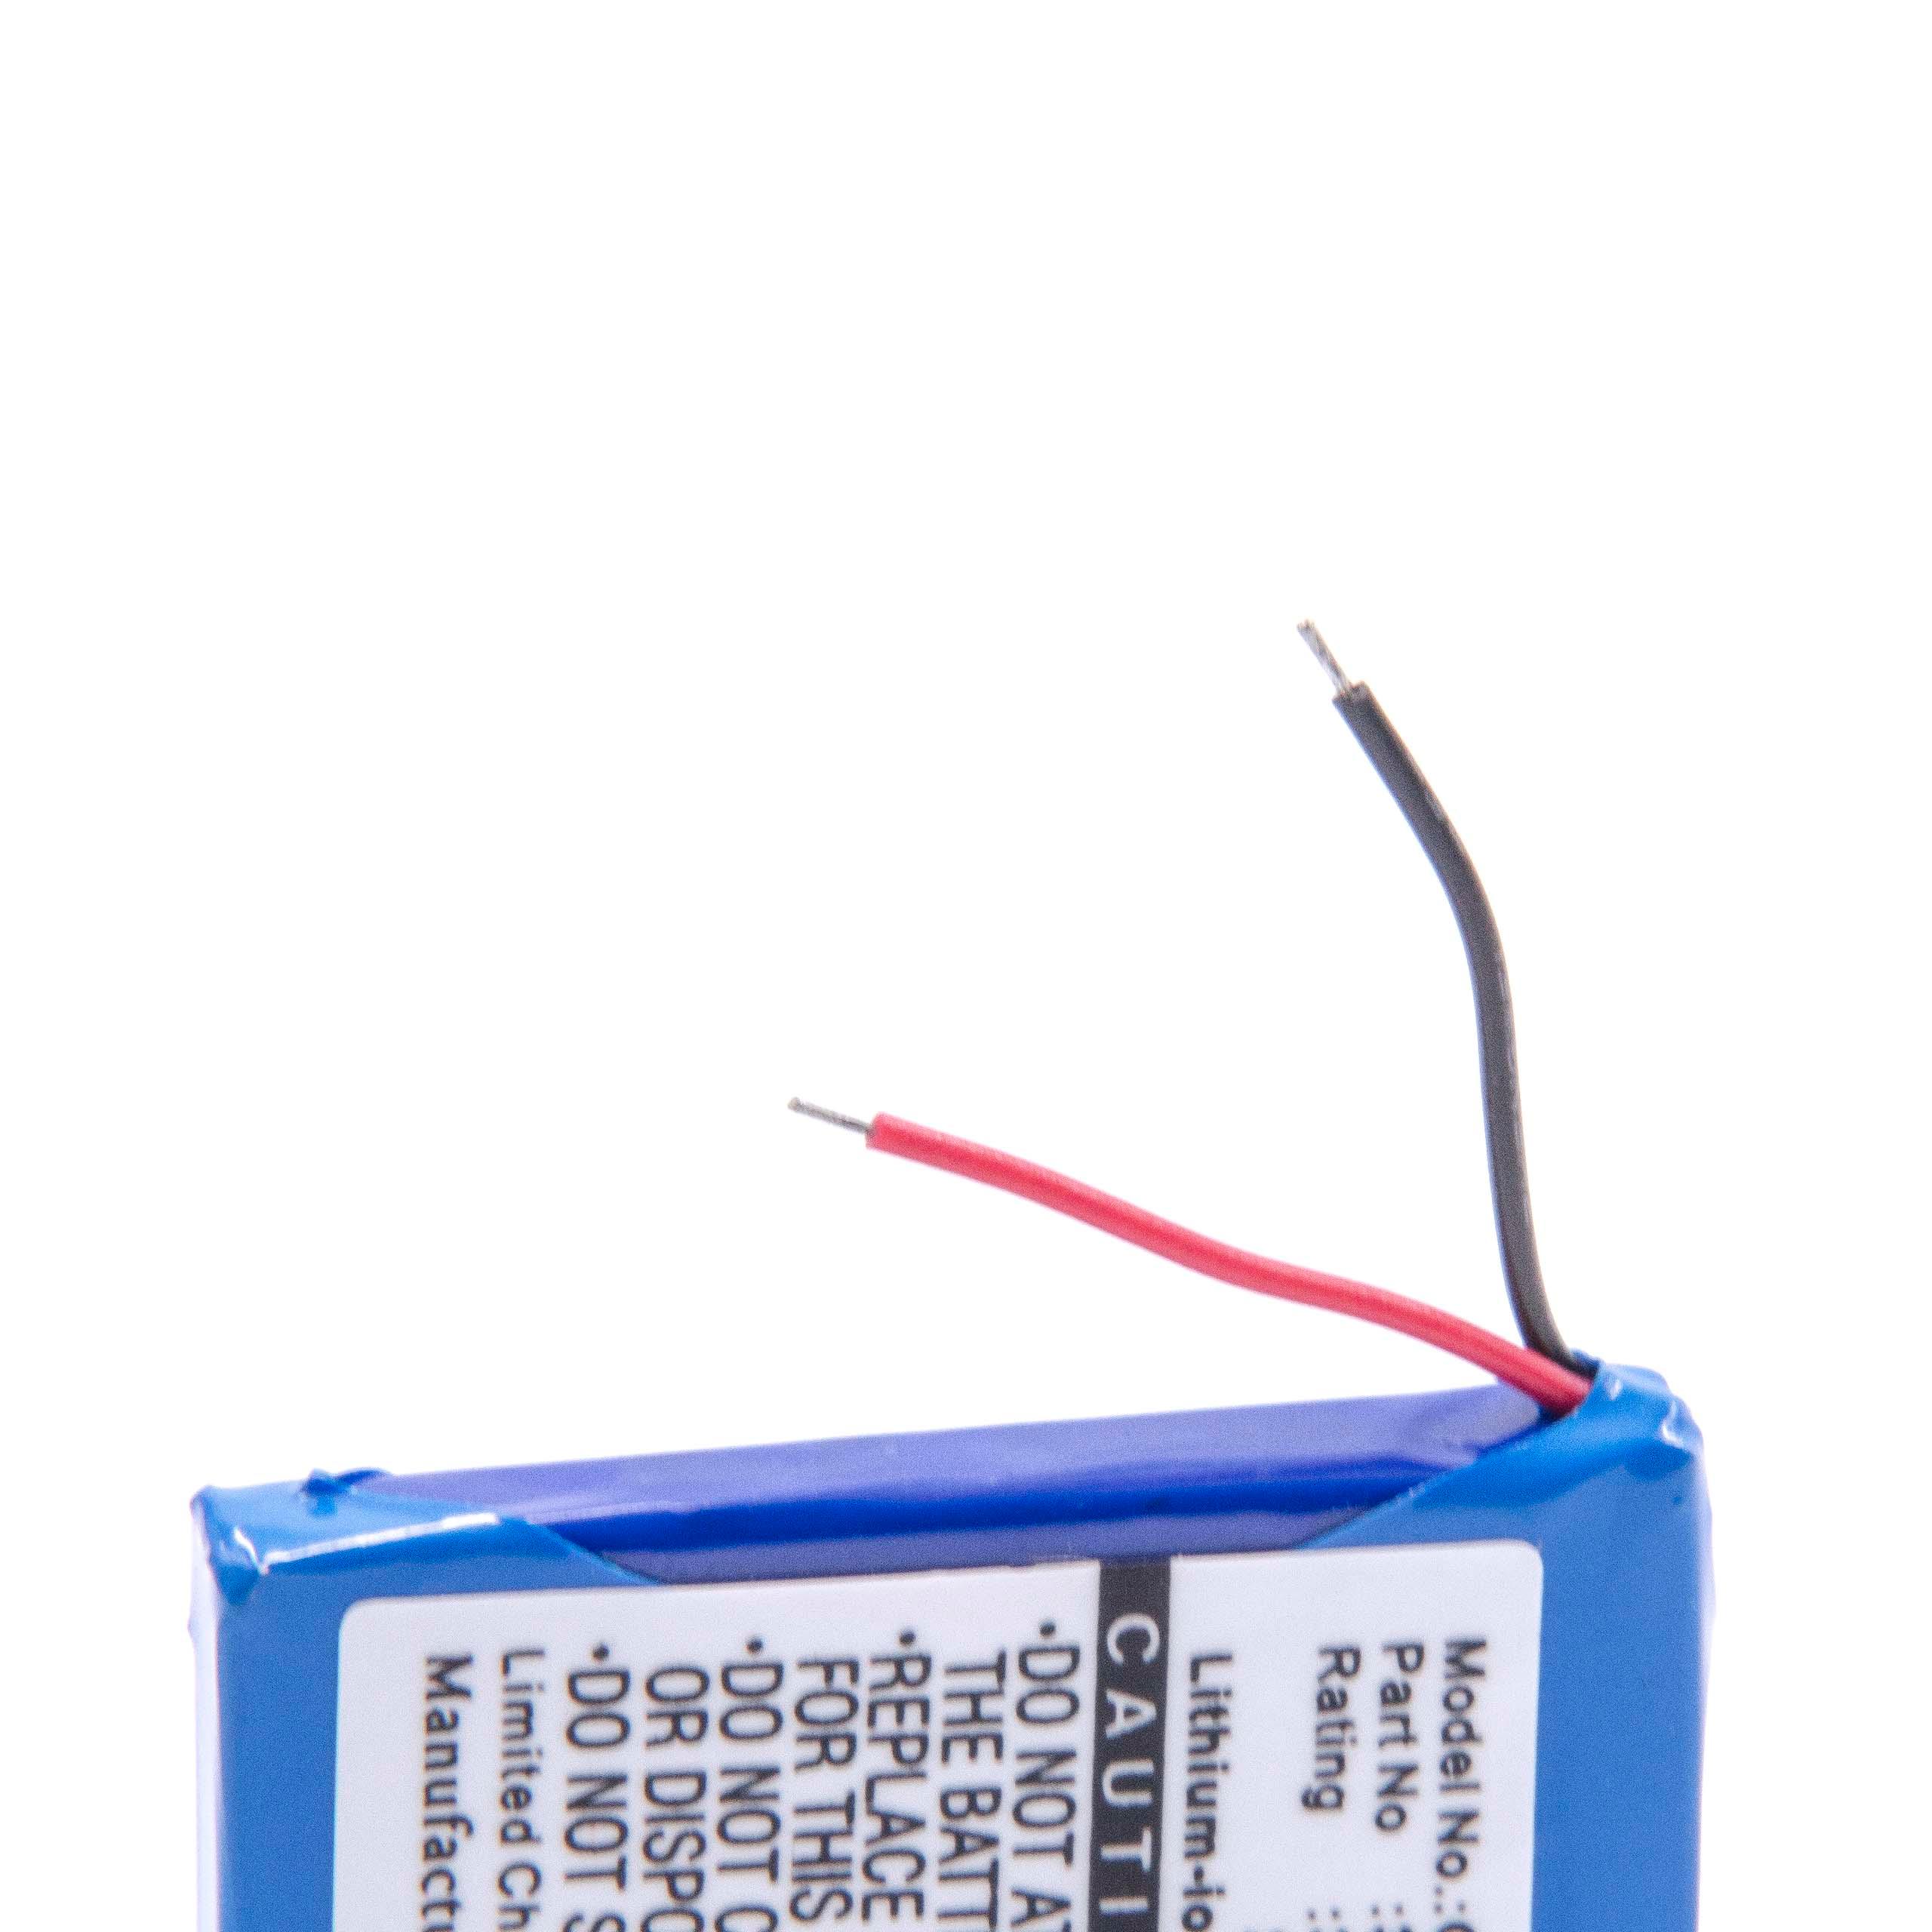 Batterie remplace Garmin 361-00013-15 pour navigation GPS - 700mAh 3,7V Li-ion